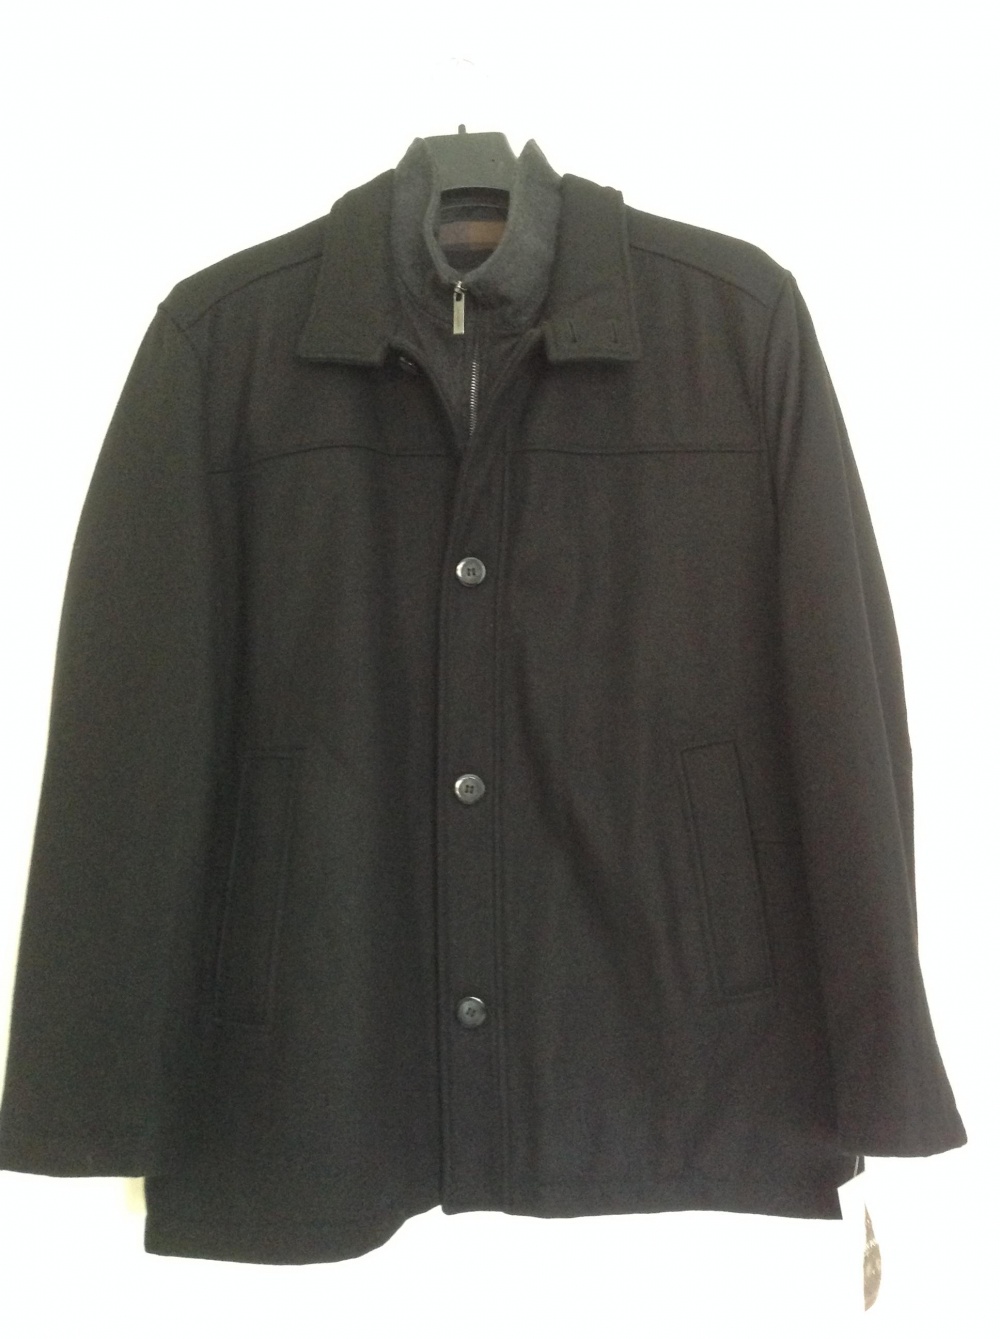 Пальто, куртка  London Fog, размер XL, на 52-54-56